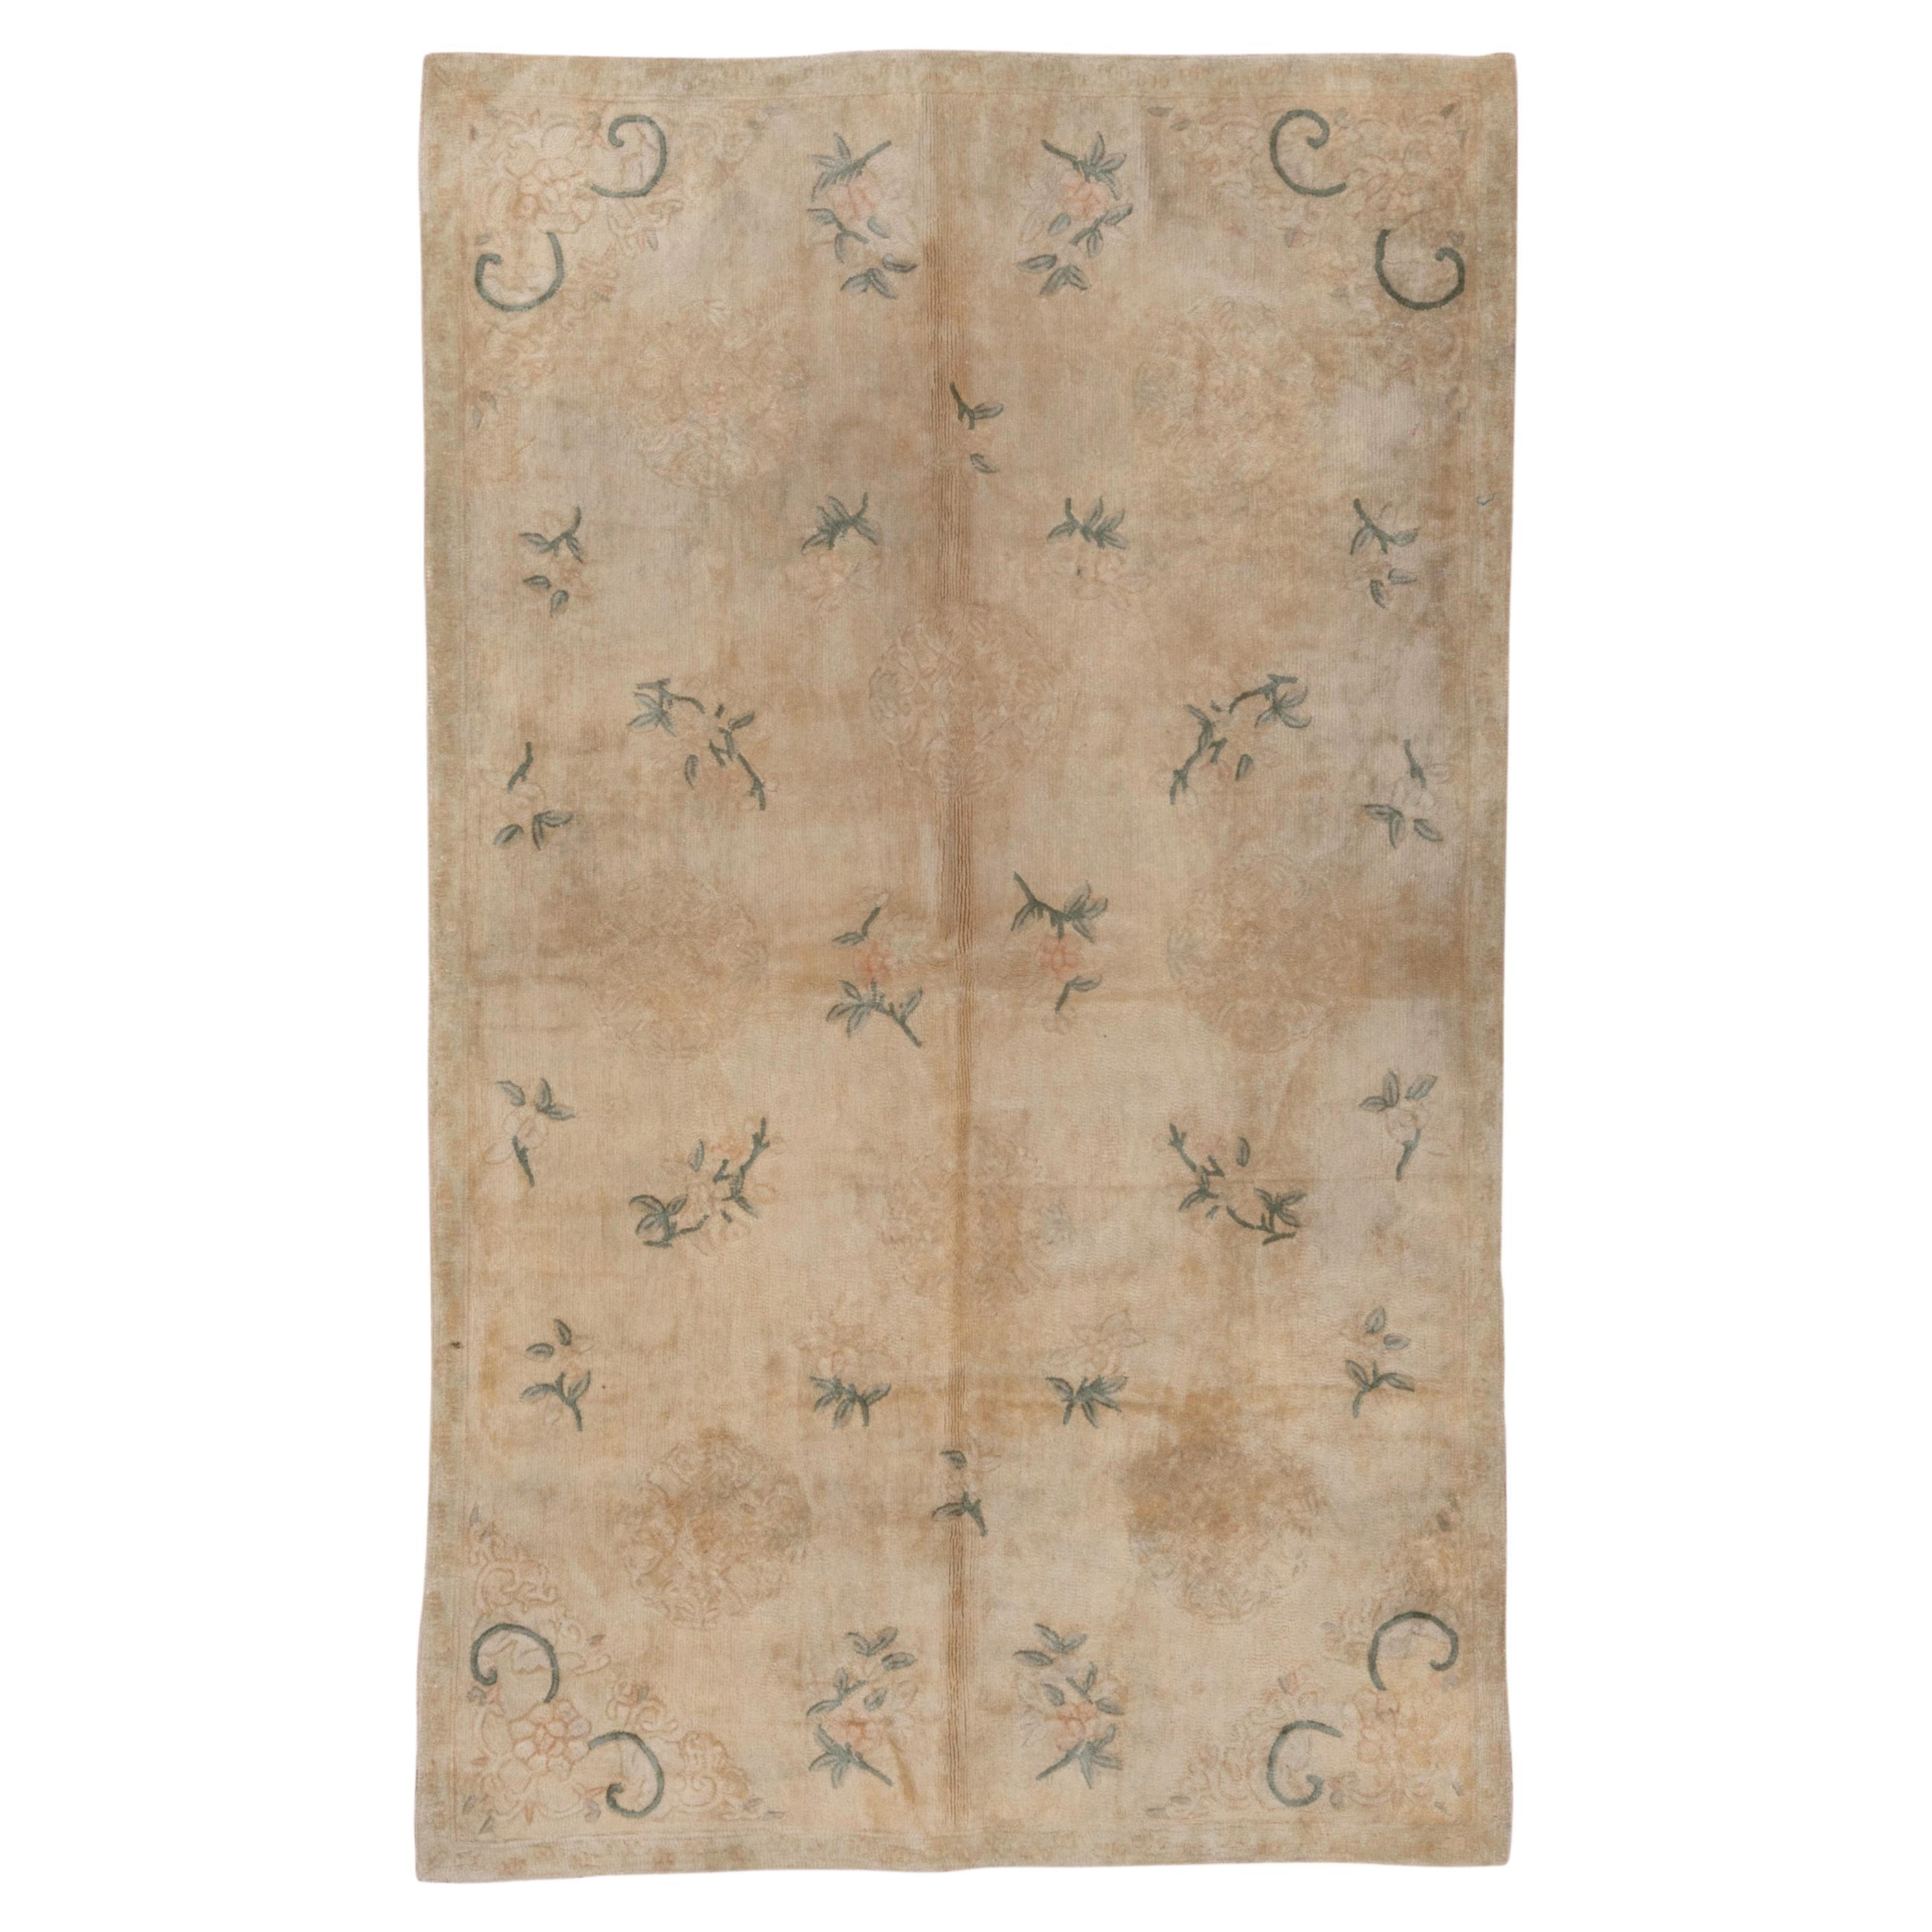 Tapis chinois ancien à l'aiguille avec motifs floraux et champ beige